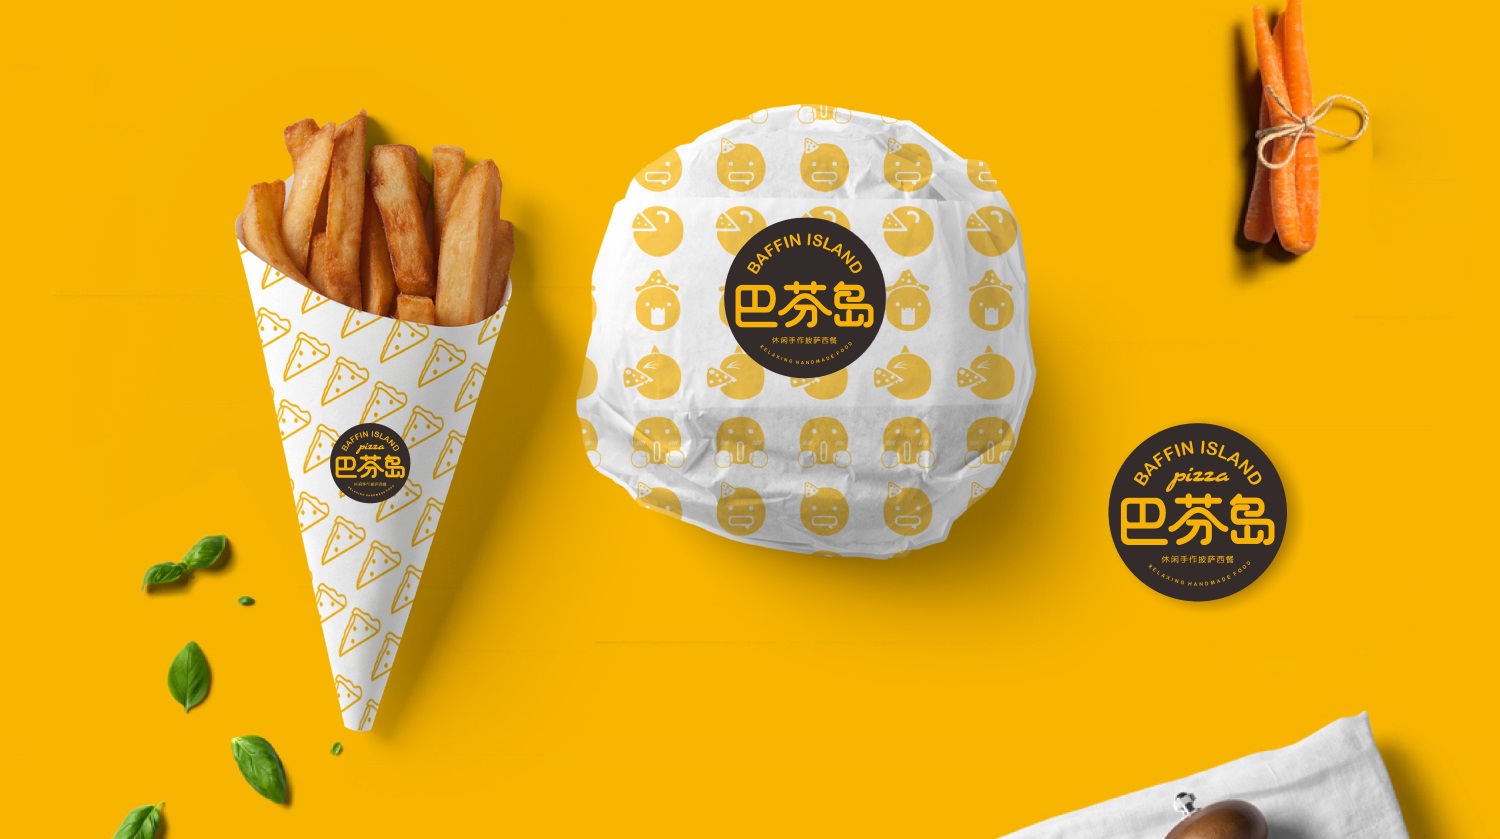 广东西餐连锁品牌巴芬岛包装设计